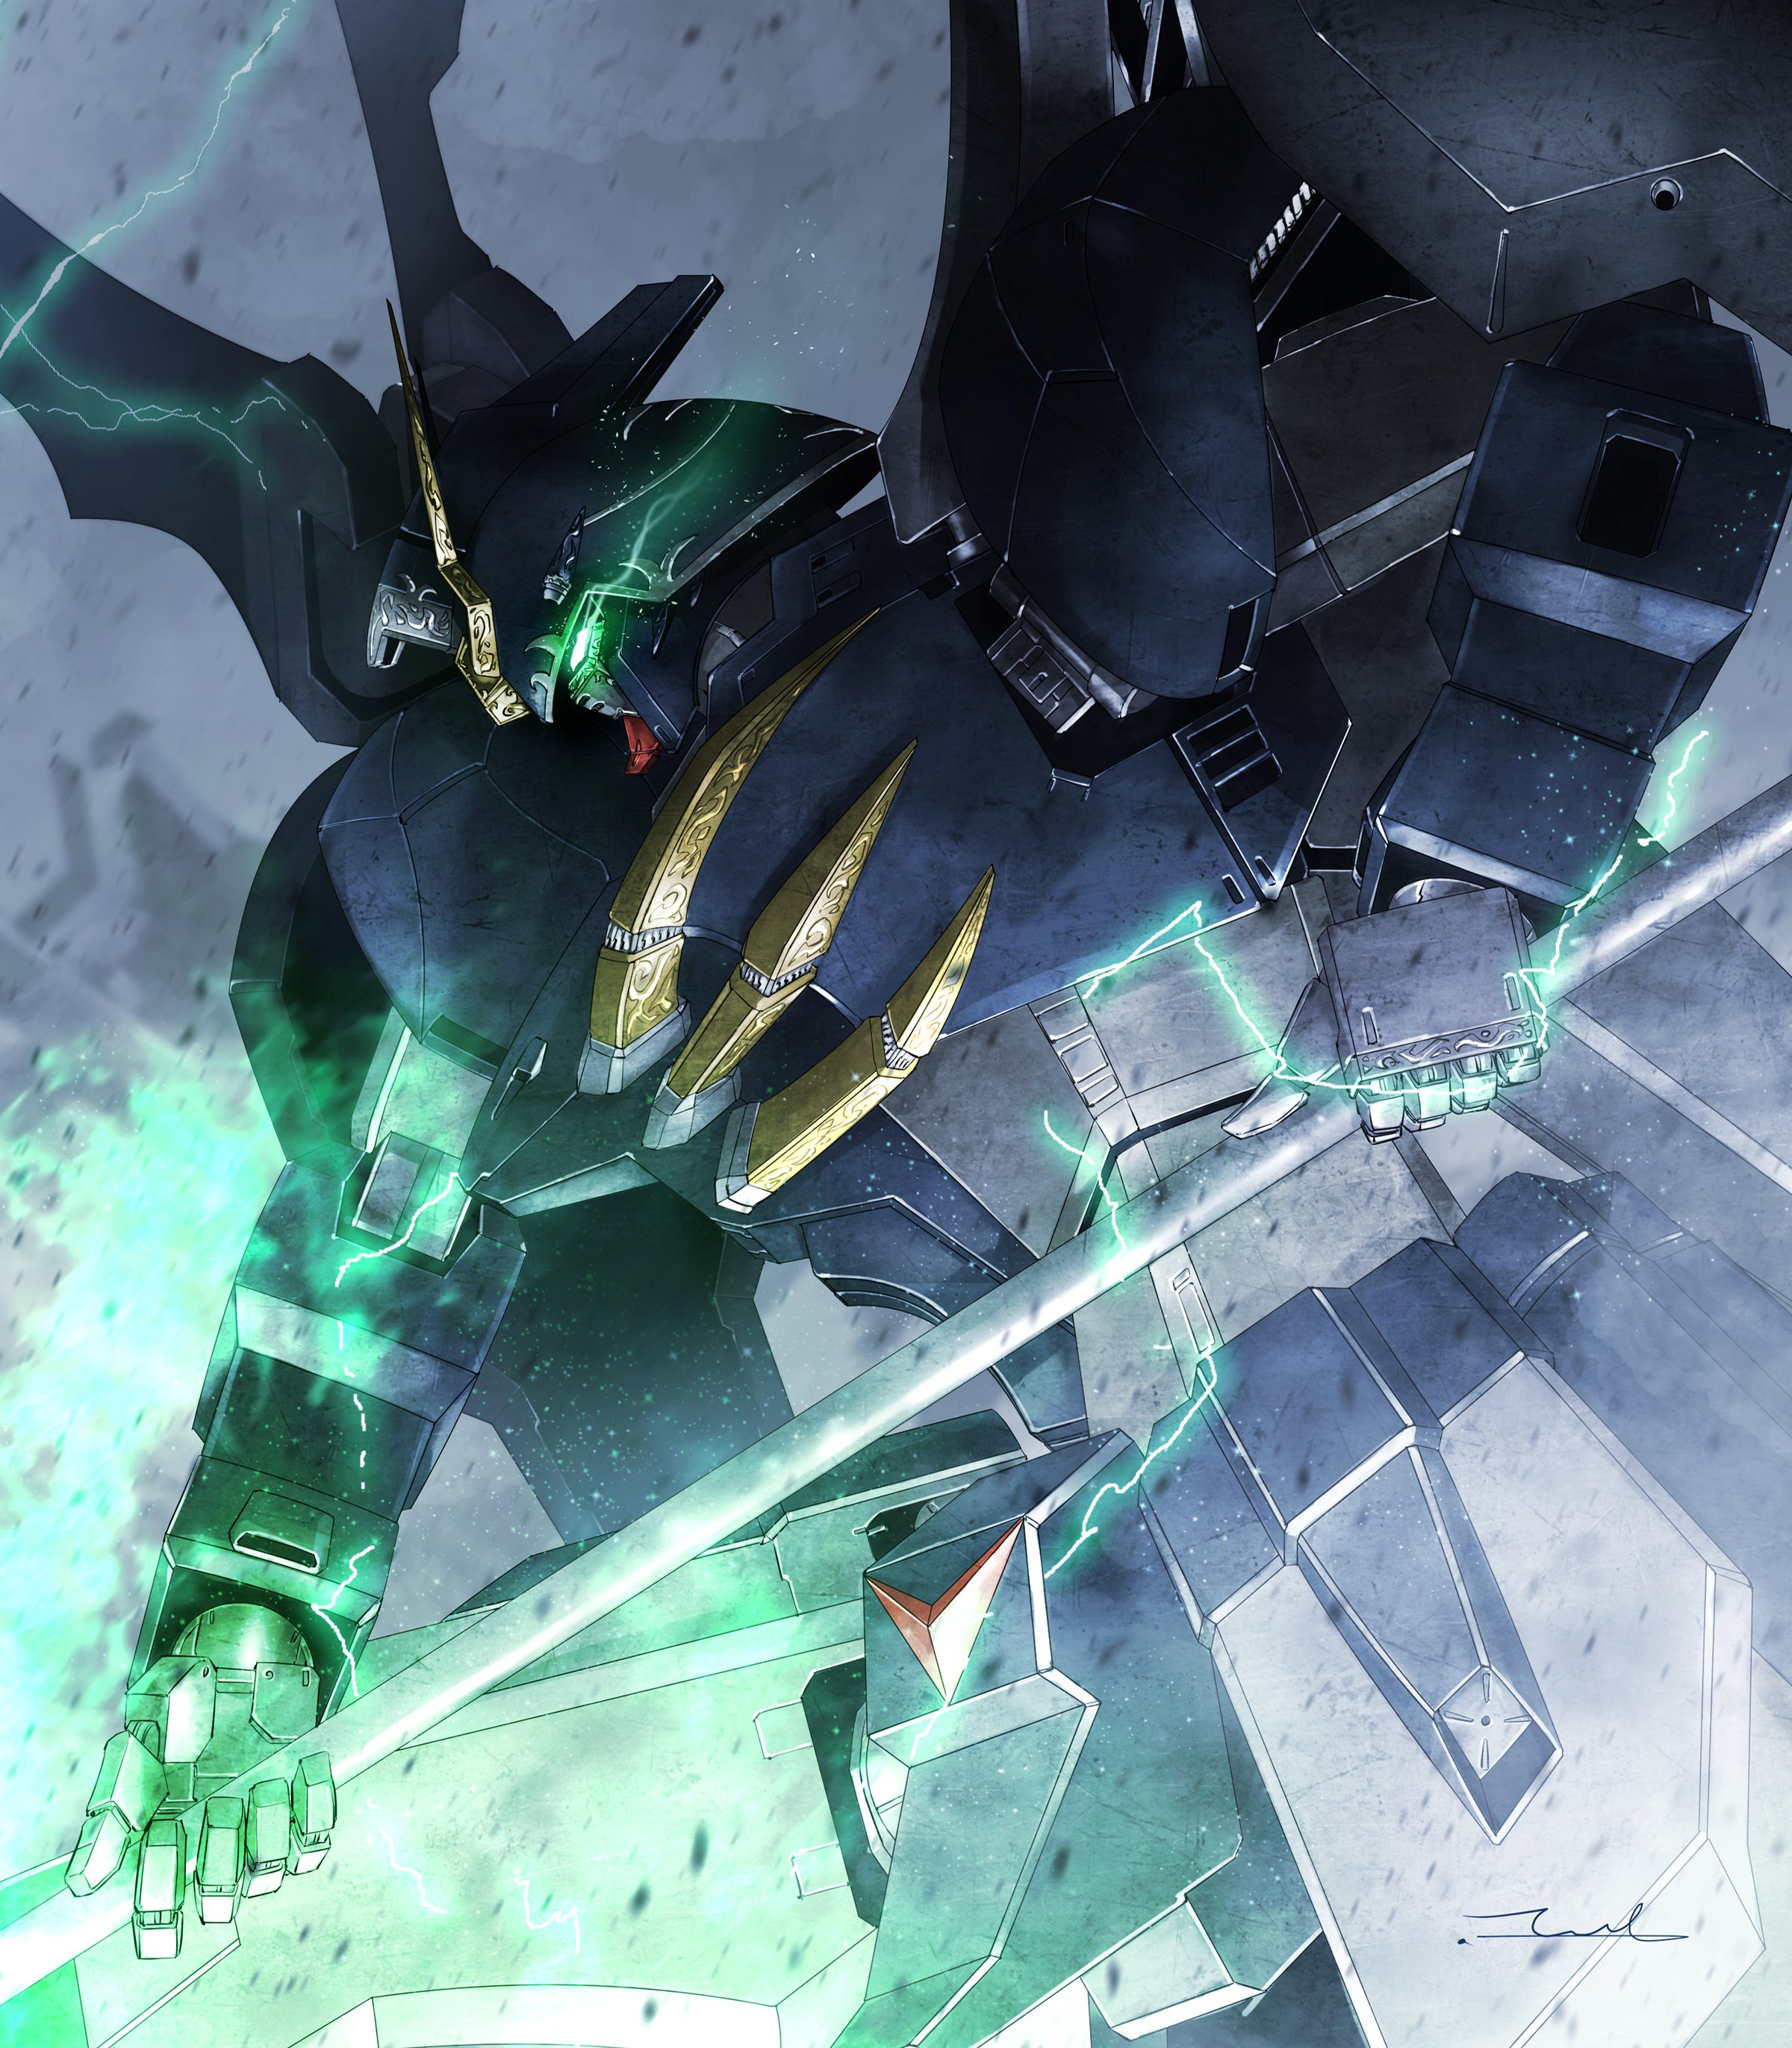 Taka F Hell イラスト デスサイズヘル ガンダムw マキオン Exvs2xb G Wing Gundamw Deathscythe Gundam Gundamfanart T Co M9nndzag Twitter